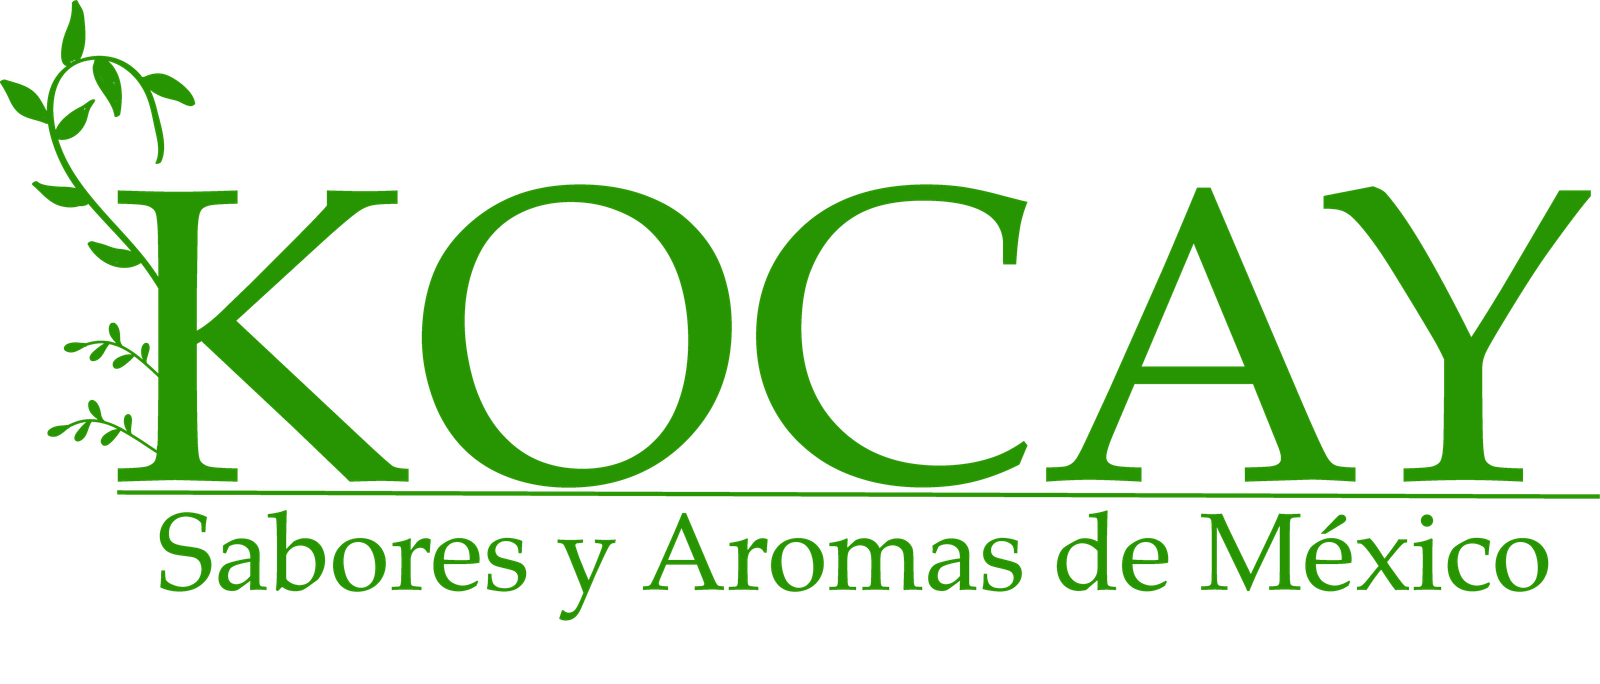 Logo Kocay